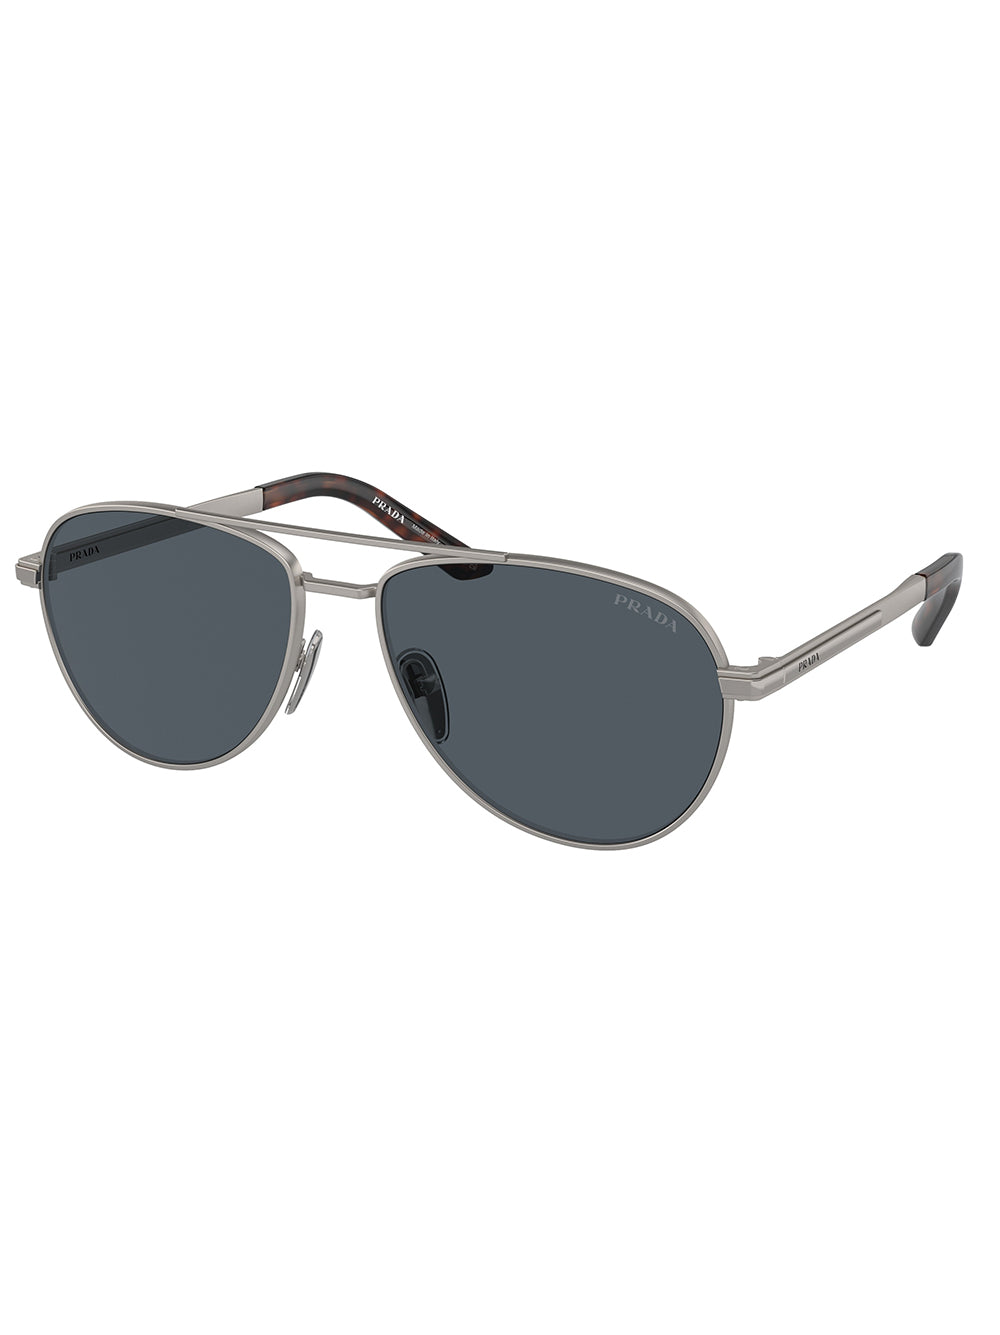 Prada Sunglasses 0PR A54S (More Colors)